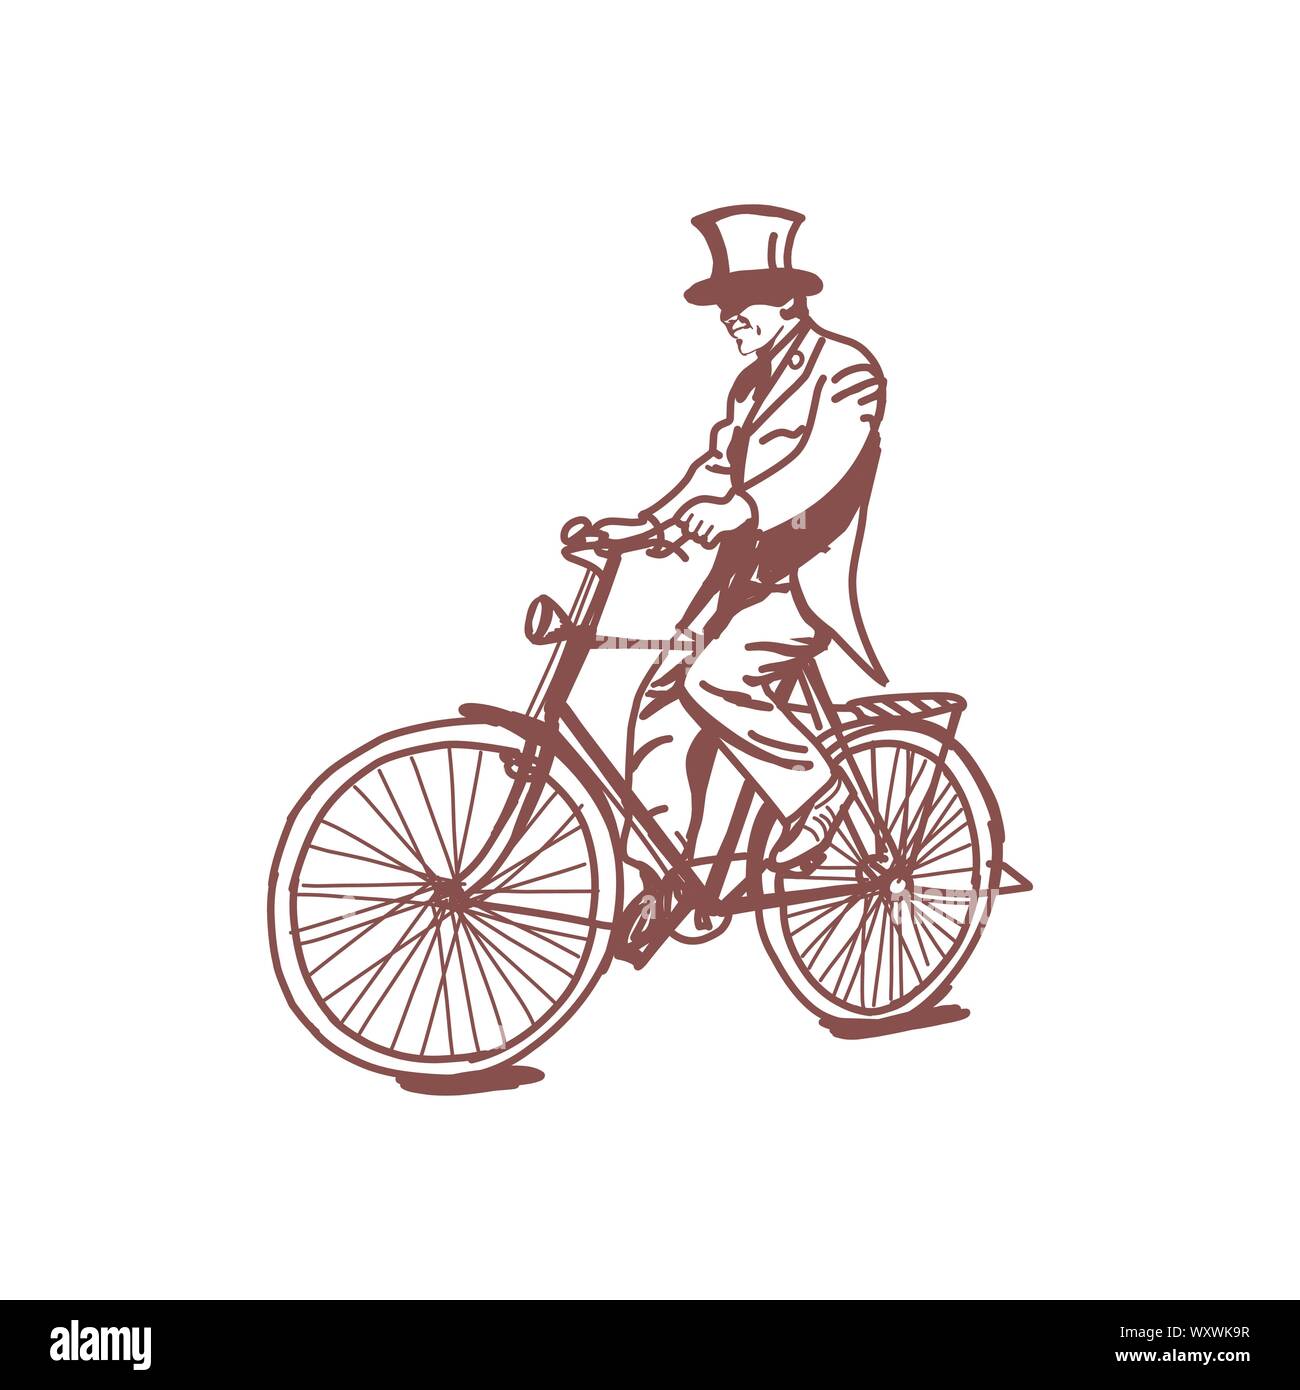 Croquis de l'homme victorien de la bicyclette,ère victorienne steampunk ligne vectorielle illustration dessiné à la main d'art Illustration de Vecteur